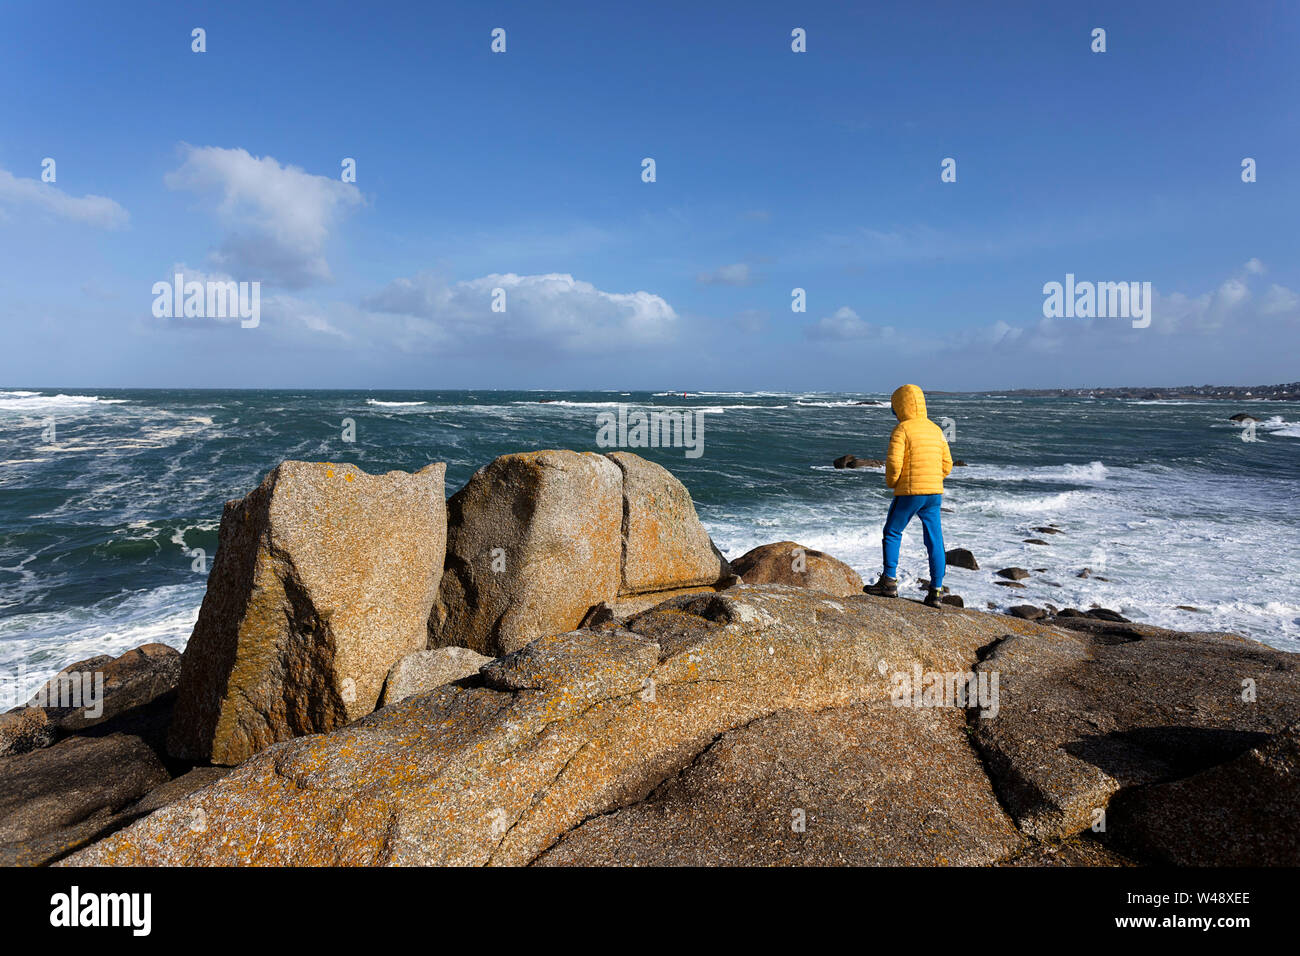 Junge in gelber Jacke stehend auf Granit Felsen beobachten große Wellen aus dem Atlantik auf schroffe Küstenlandschaft in der Bretagne, Frankreich Stockfoto